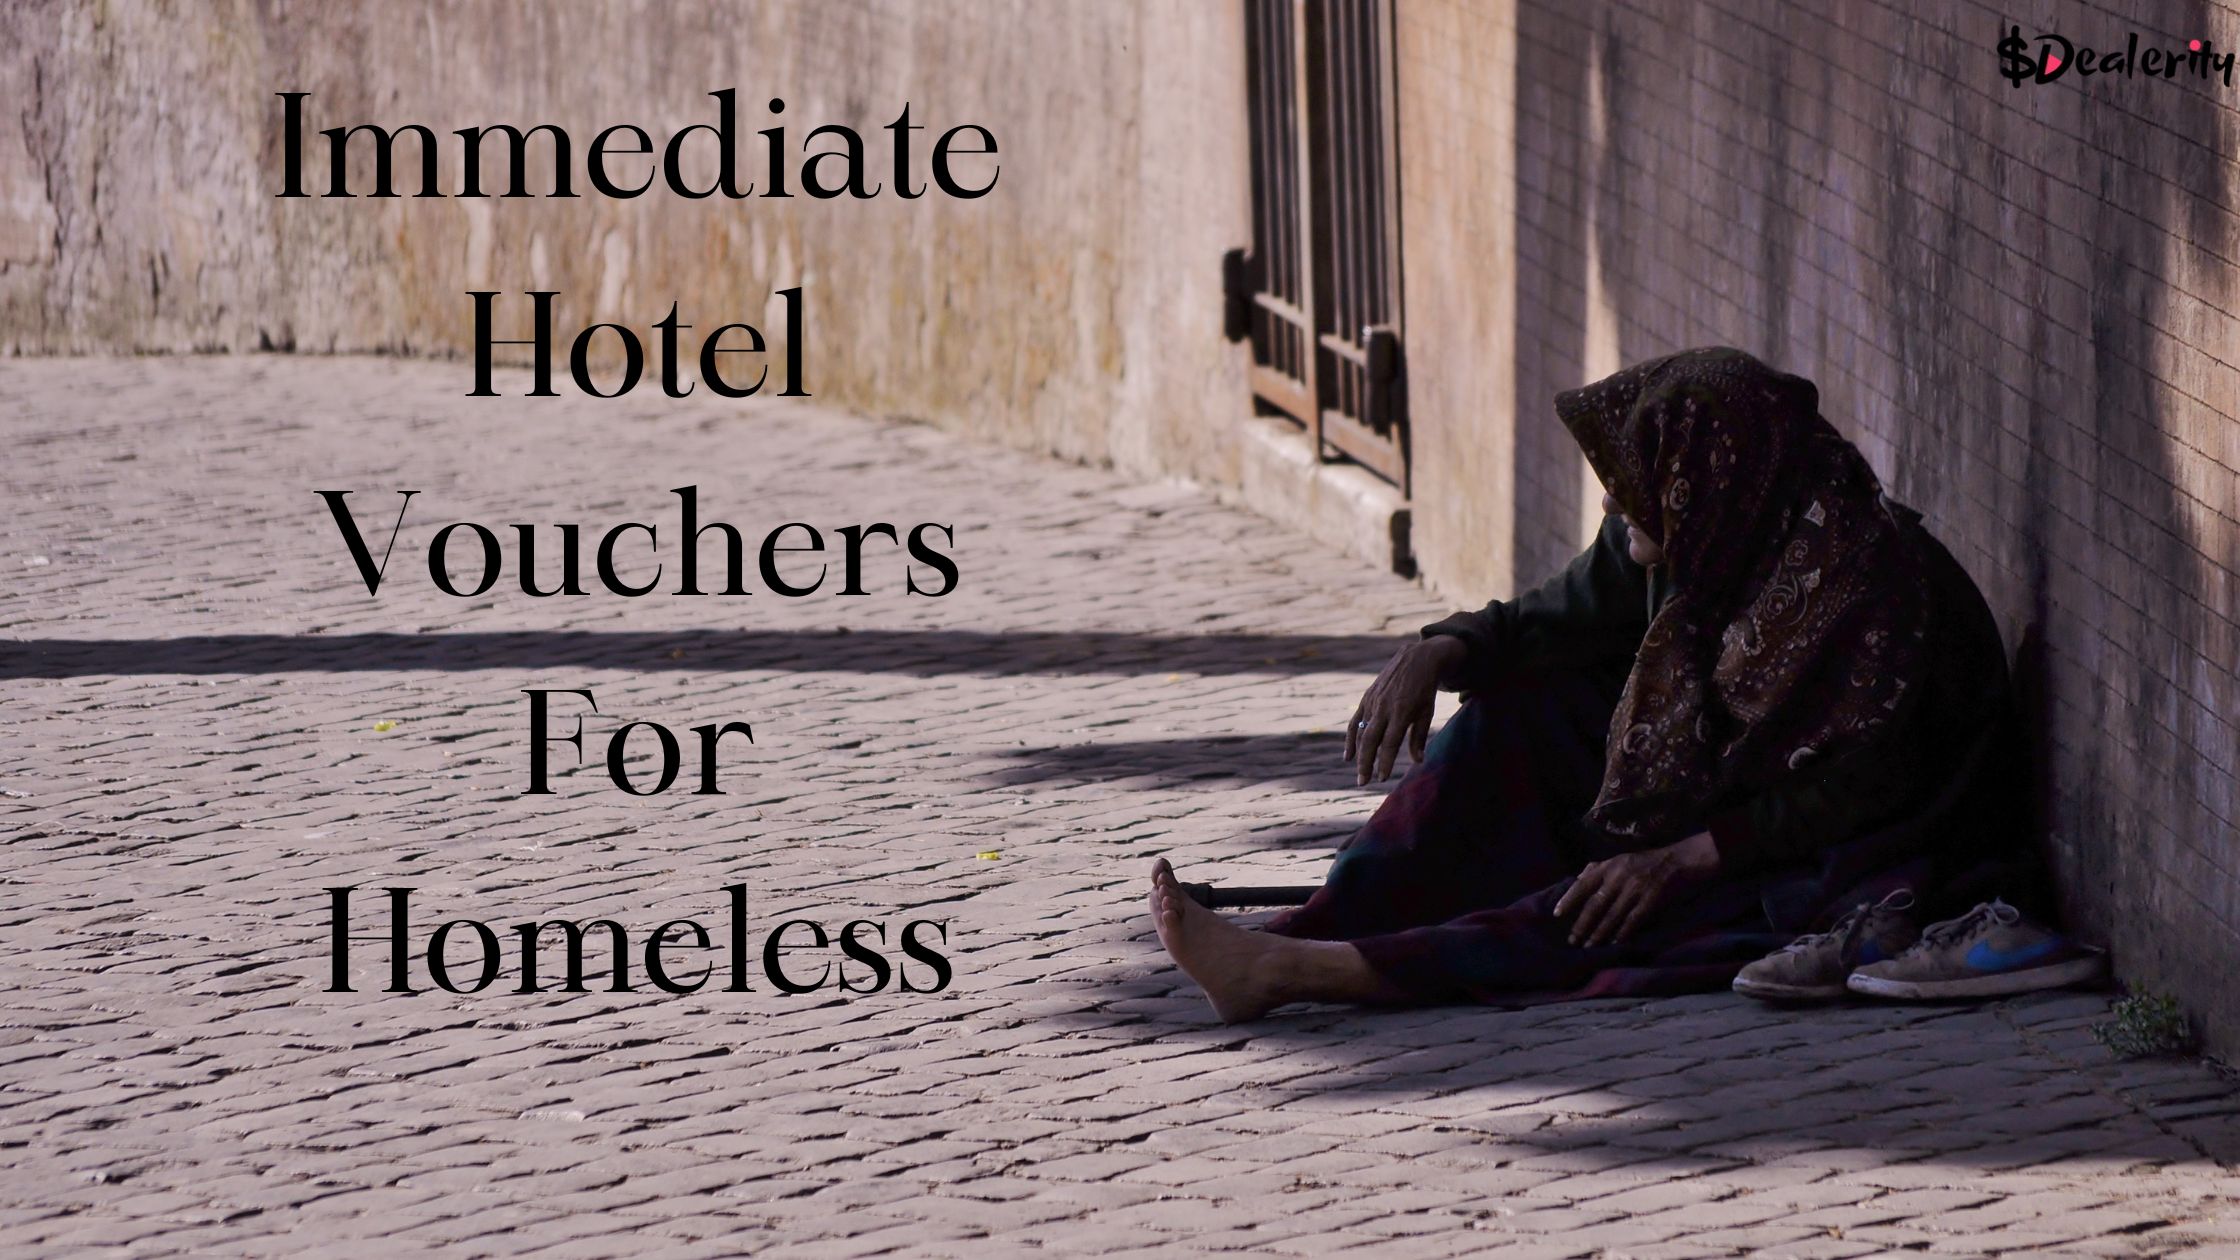 Immediate Hotel Vouchers For Homeless